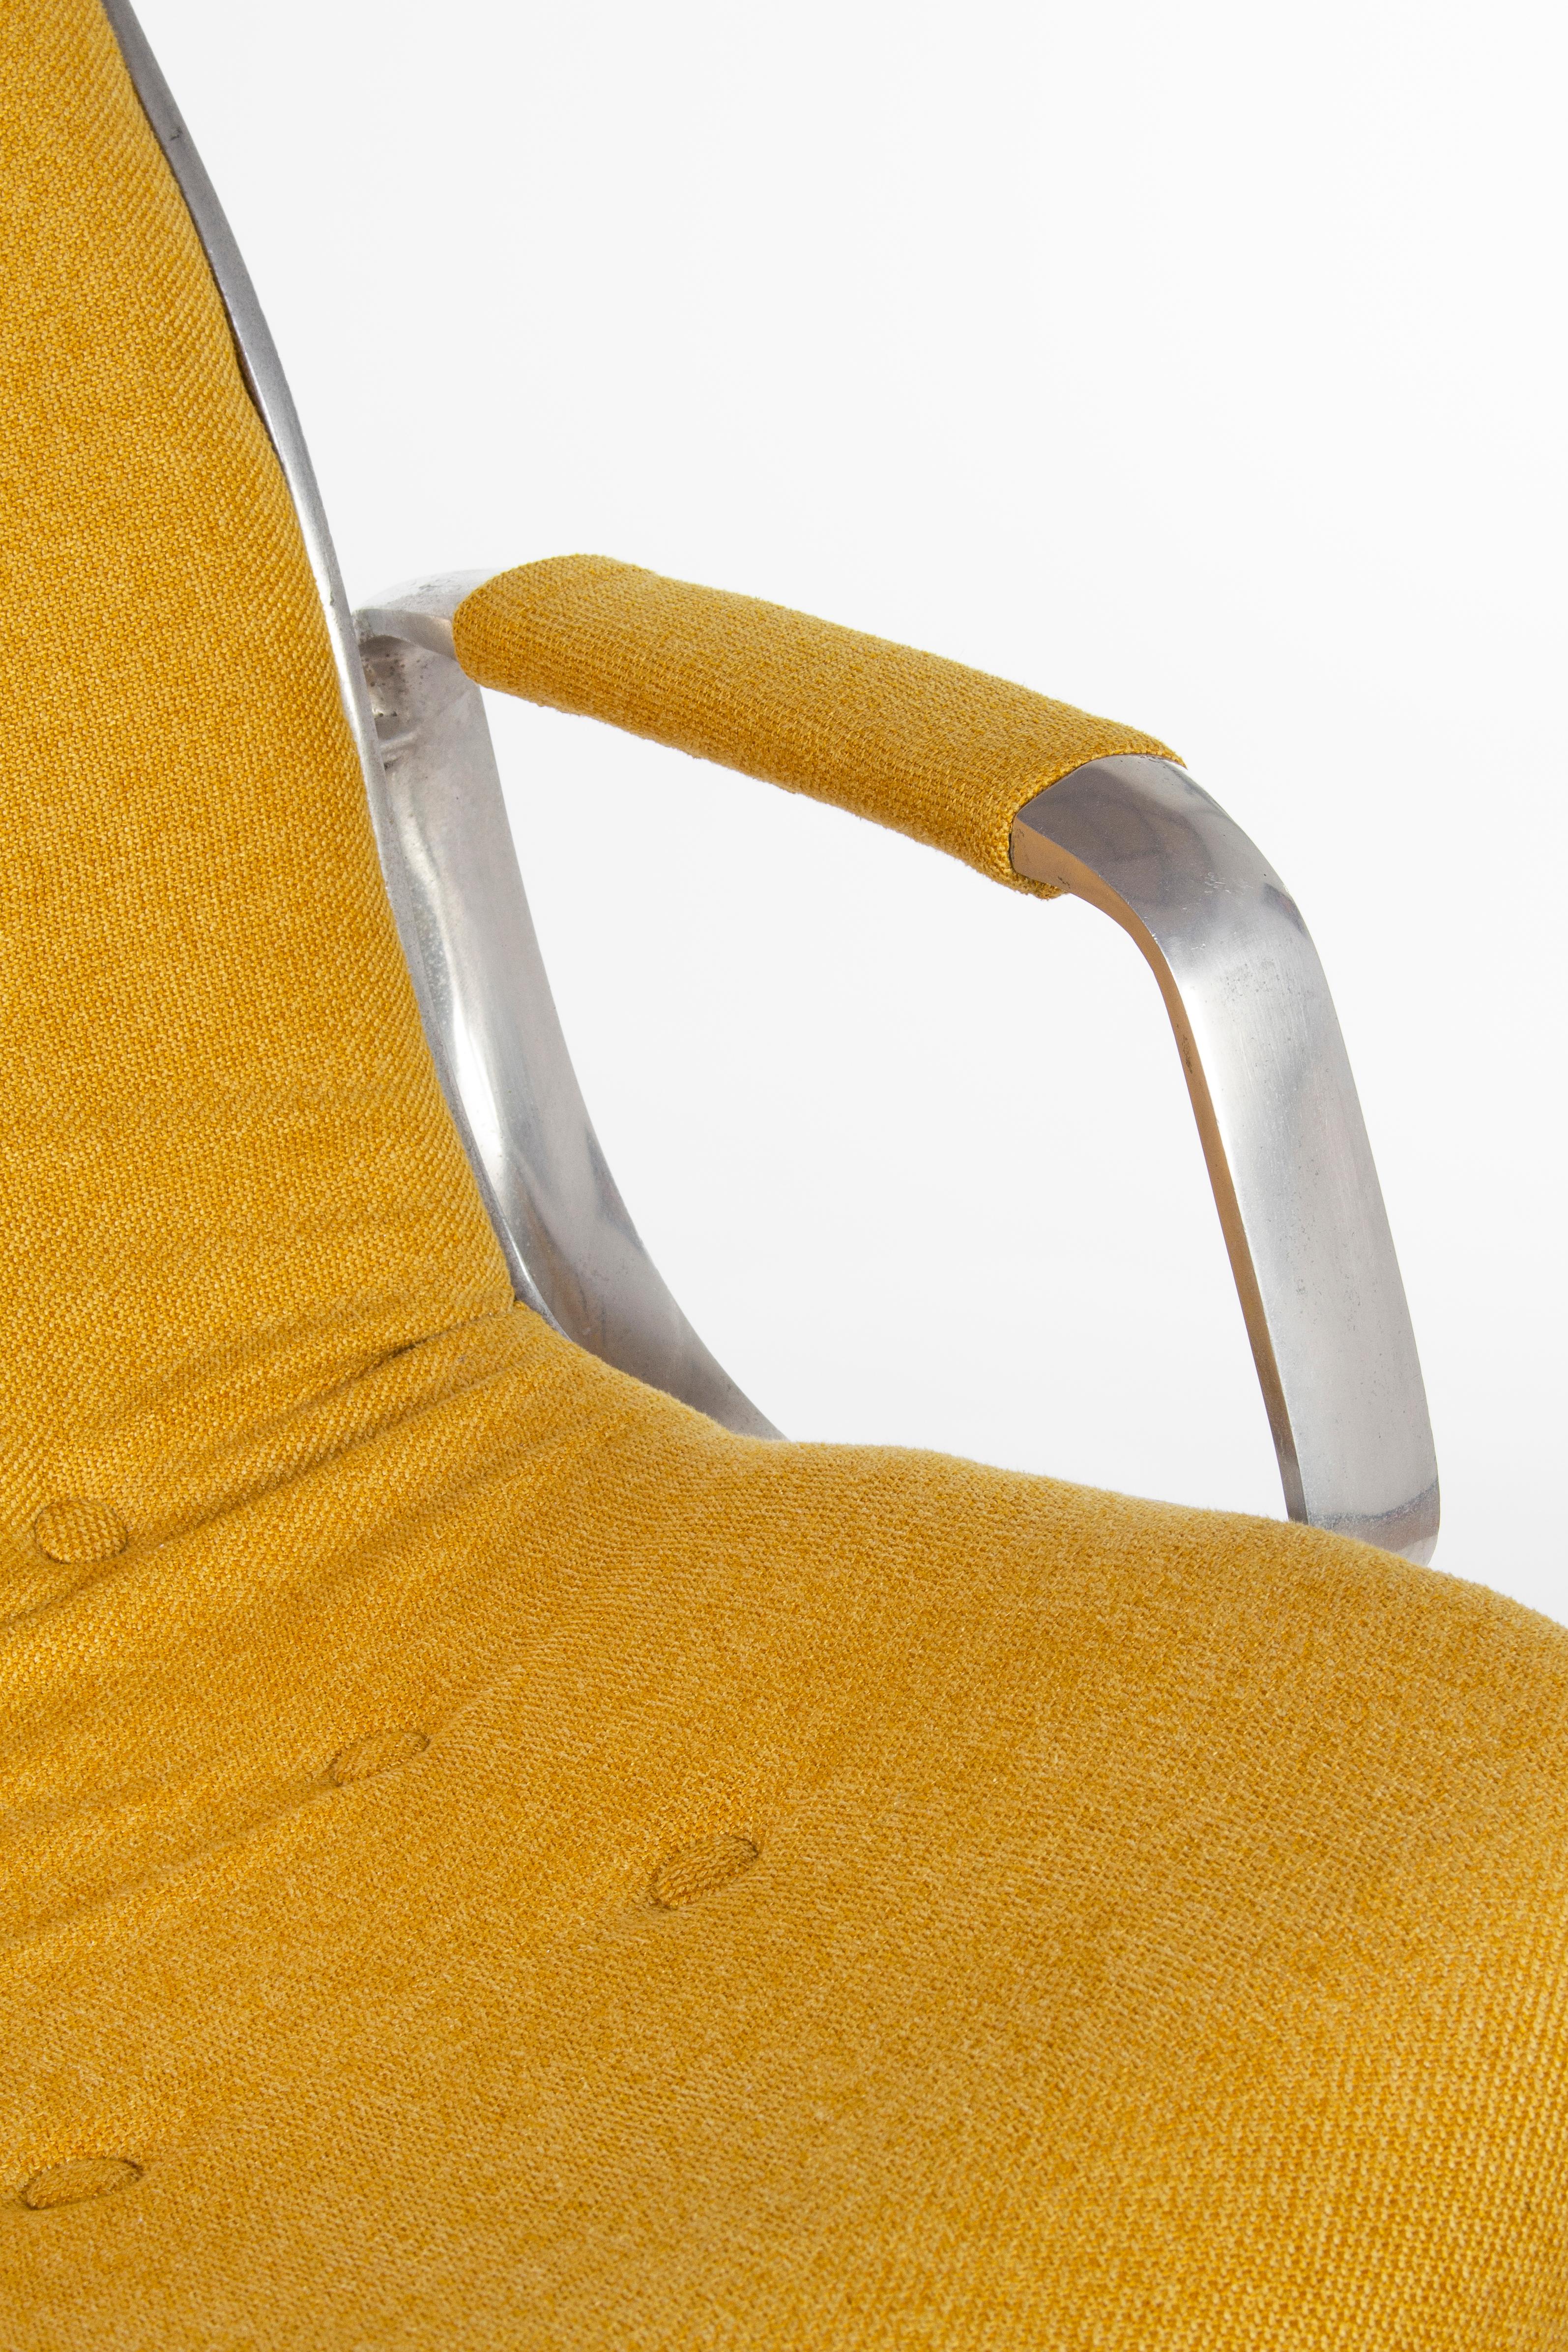 Steel Rudolf Szedleczky Design Swivel Chair in Yellow, ca. 1970s